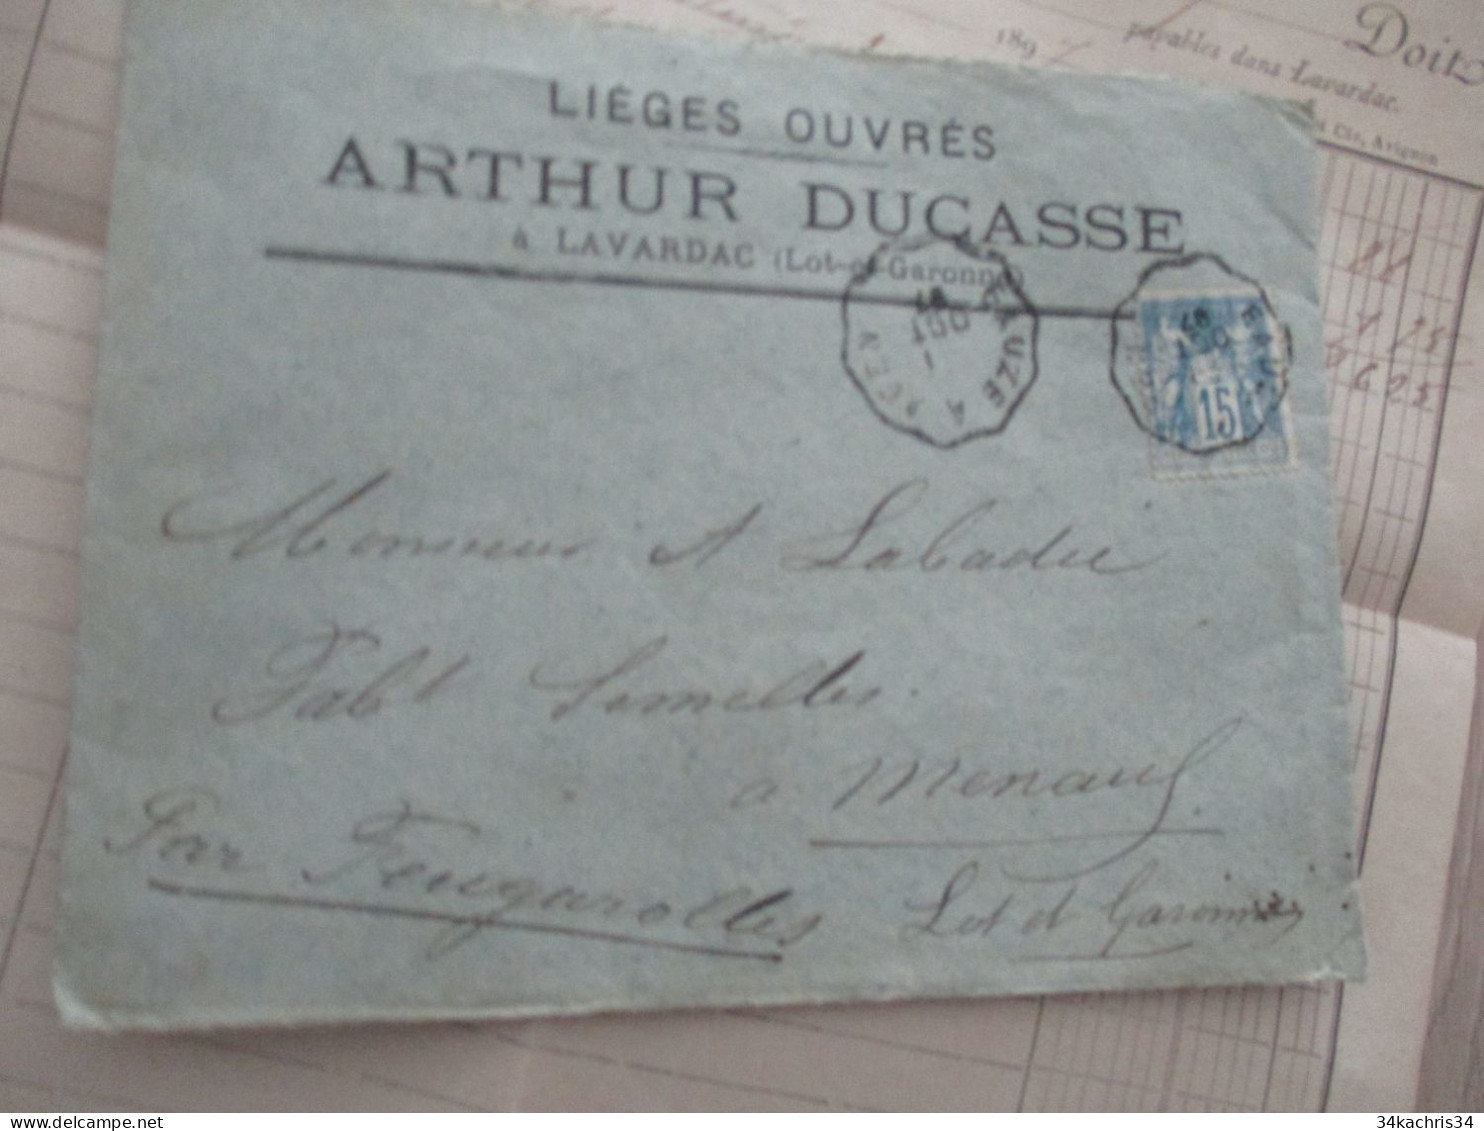 Facture + Enveloppe Pub Publicité 1897 Ducasse Arthur à Lavardac Lot Et Garonne Lièges Ouvrés - Landbouw